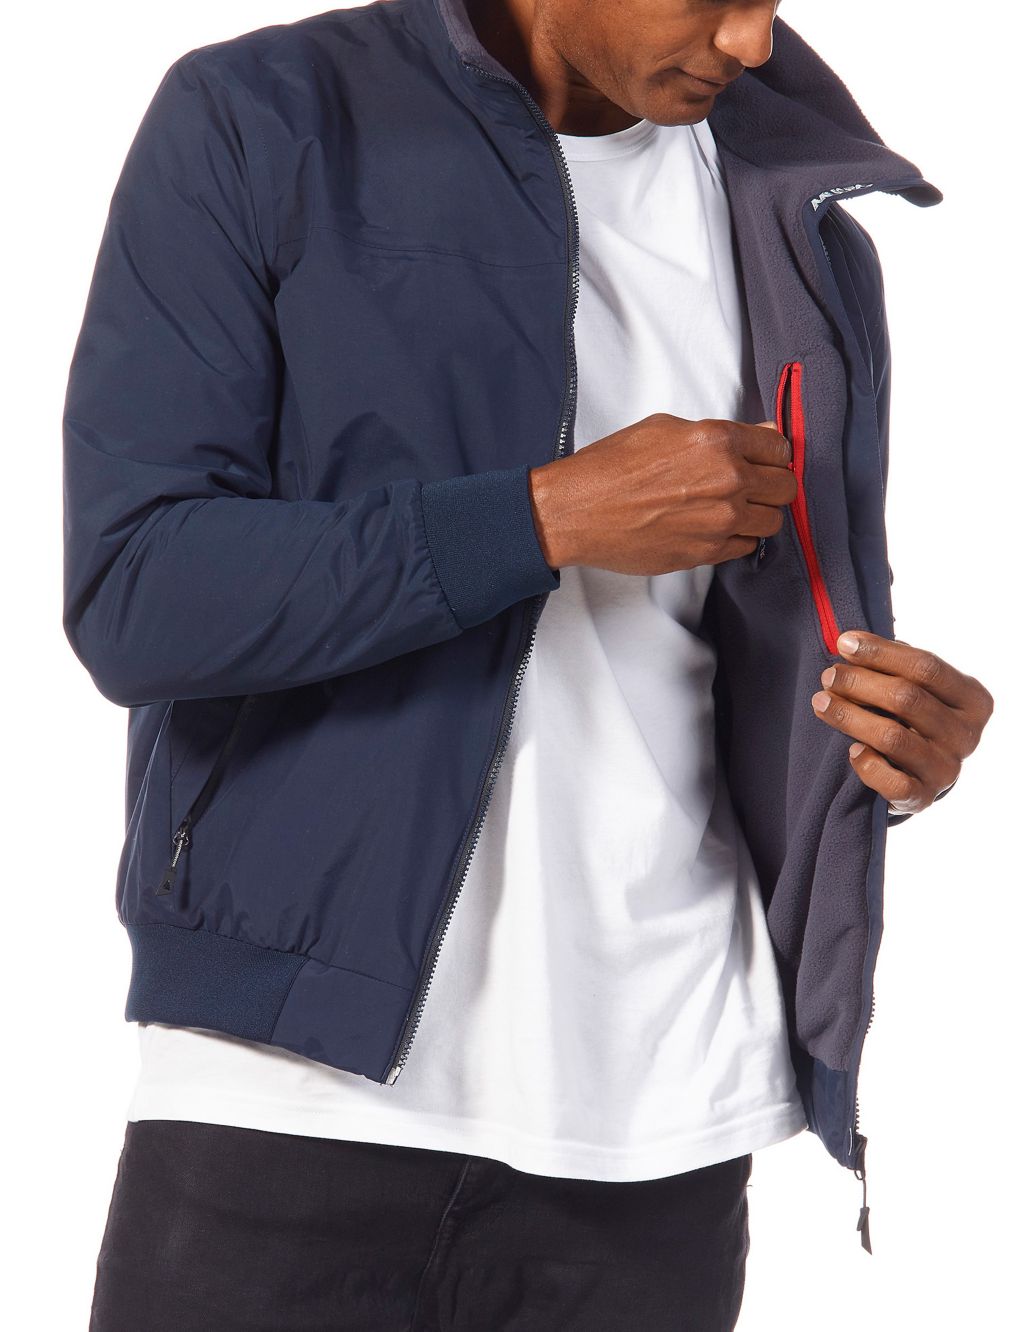 Snug Fleece Lined Jacket image 2